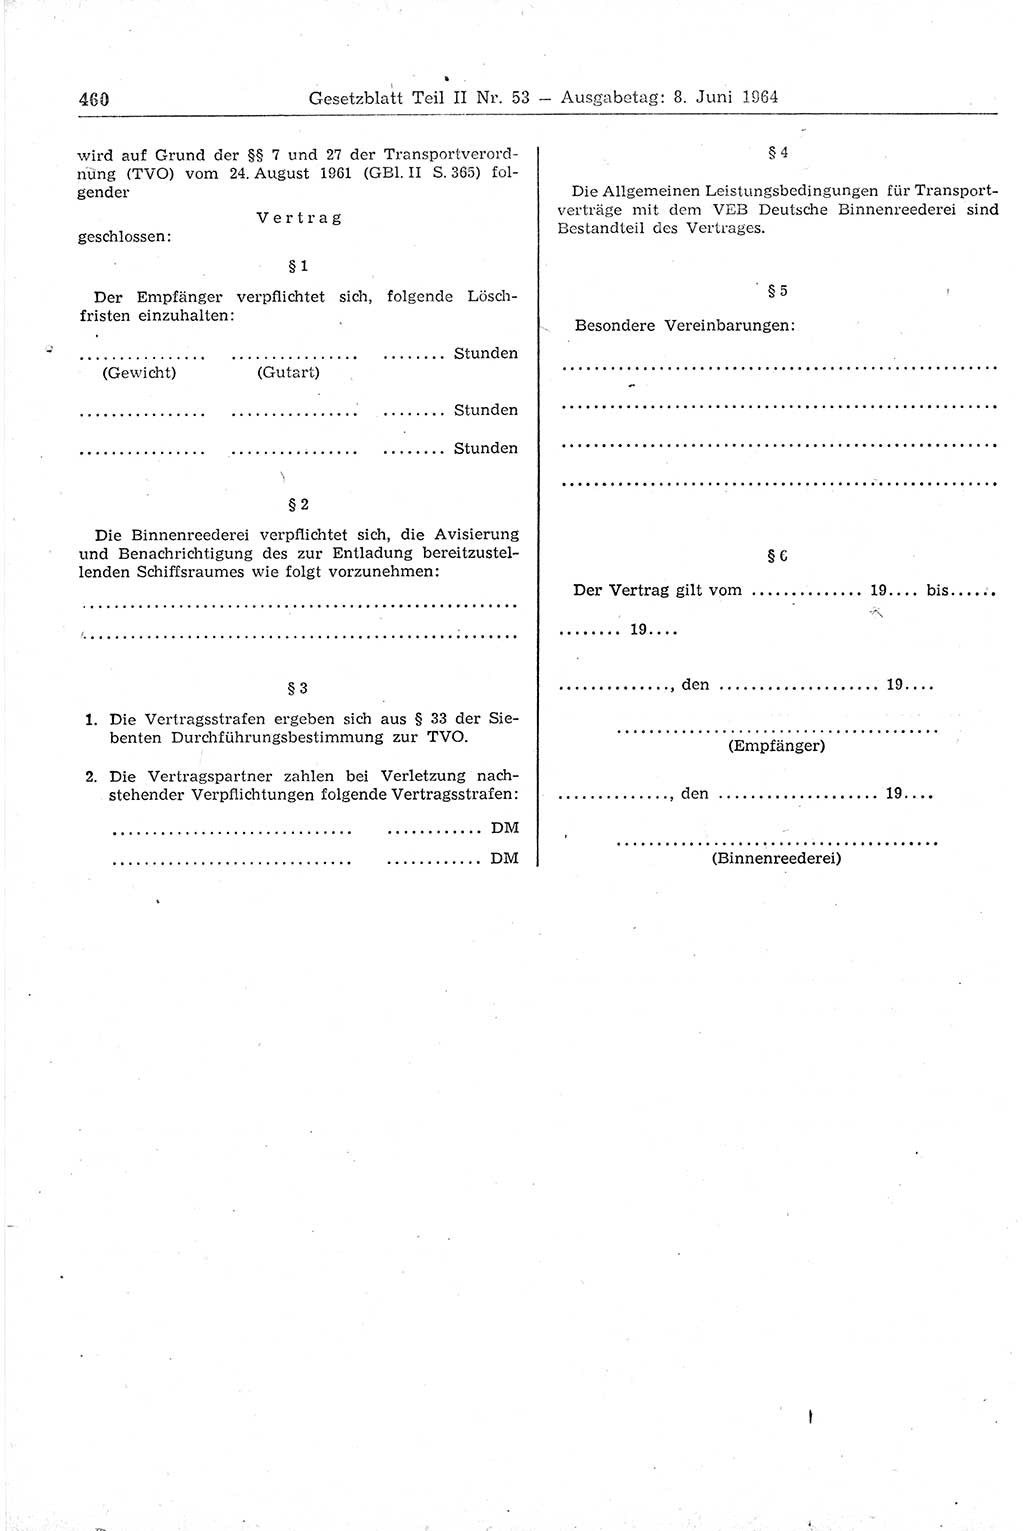 Gesetzblatt (GBl.) der Deutschen Demokratischen Republik (DDR) Teil ⅠⅠ 1964, Seite 460 (GBl. DDR ⅠⅠ 1964, S. 460)